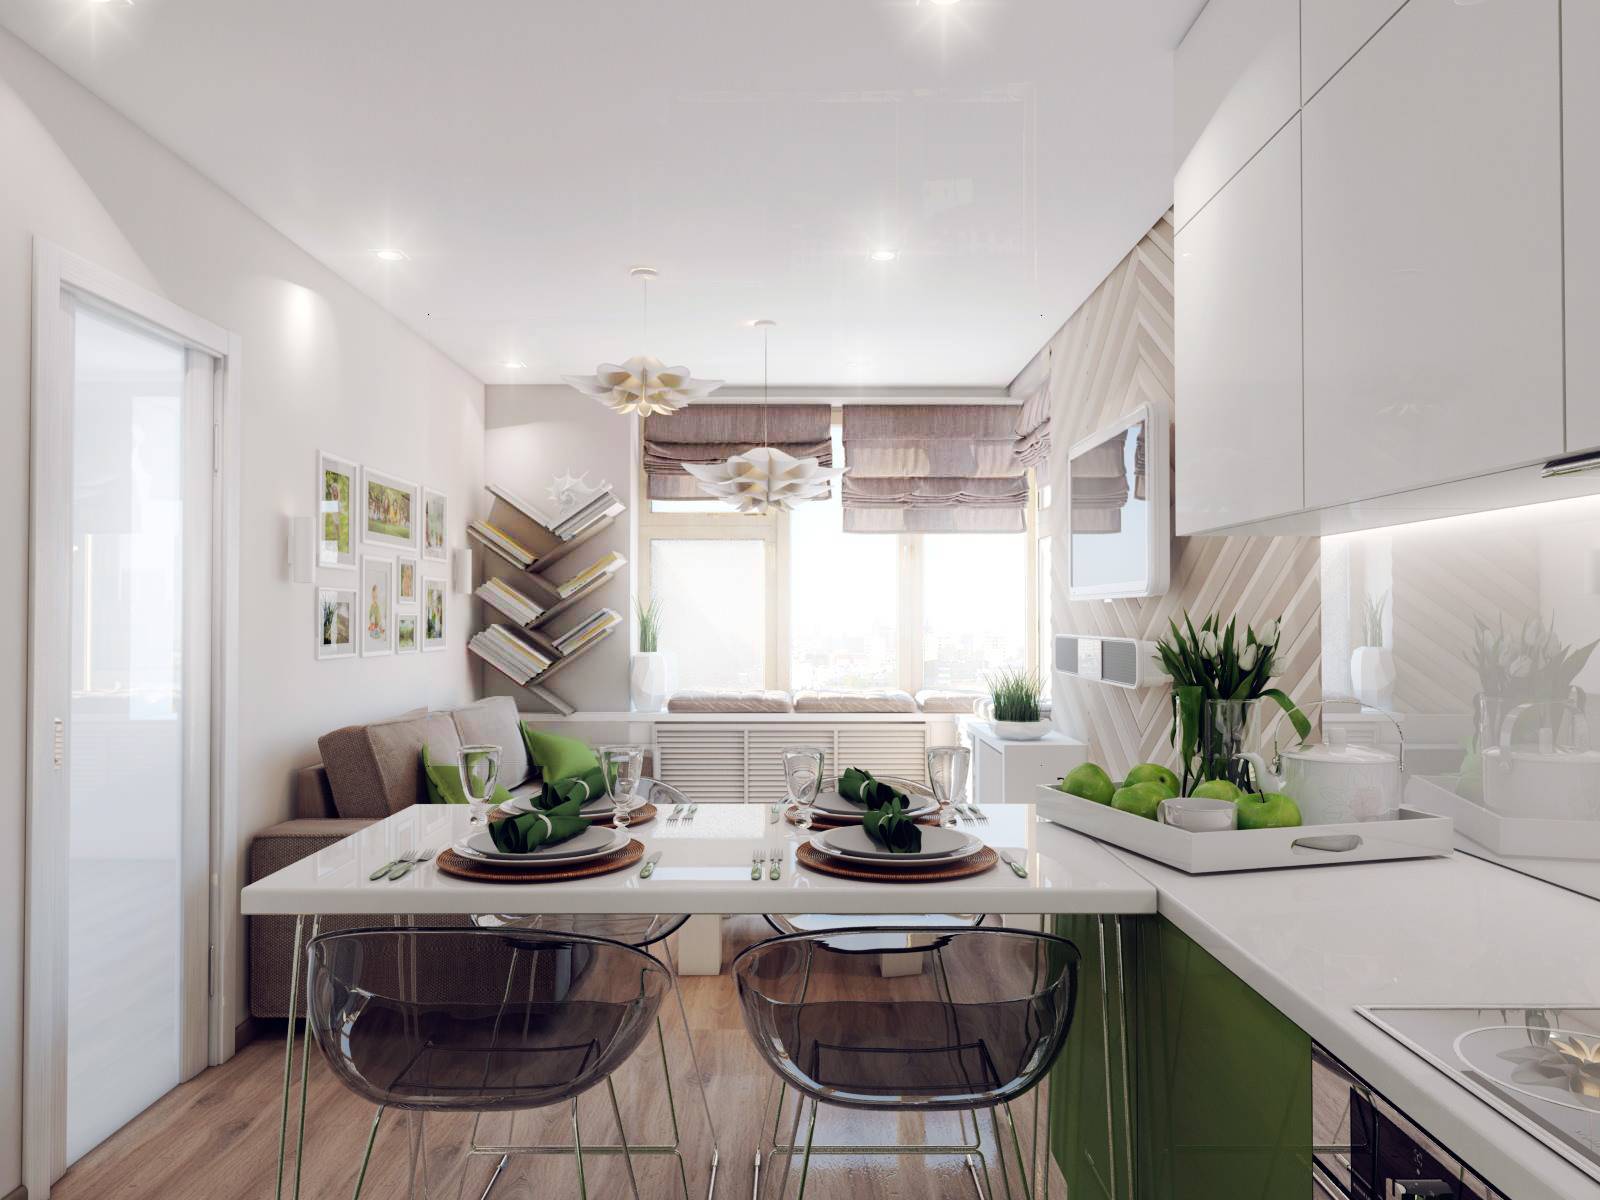 Кухни 10 кв. м.: 110 фото красиво оформленного дизайна кухни в 10 м²